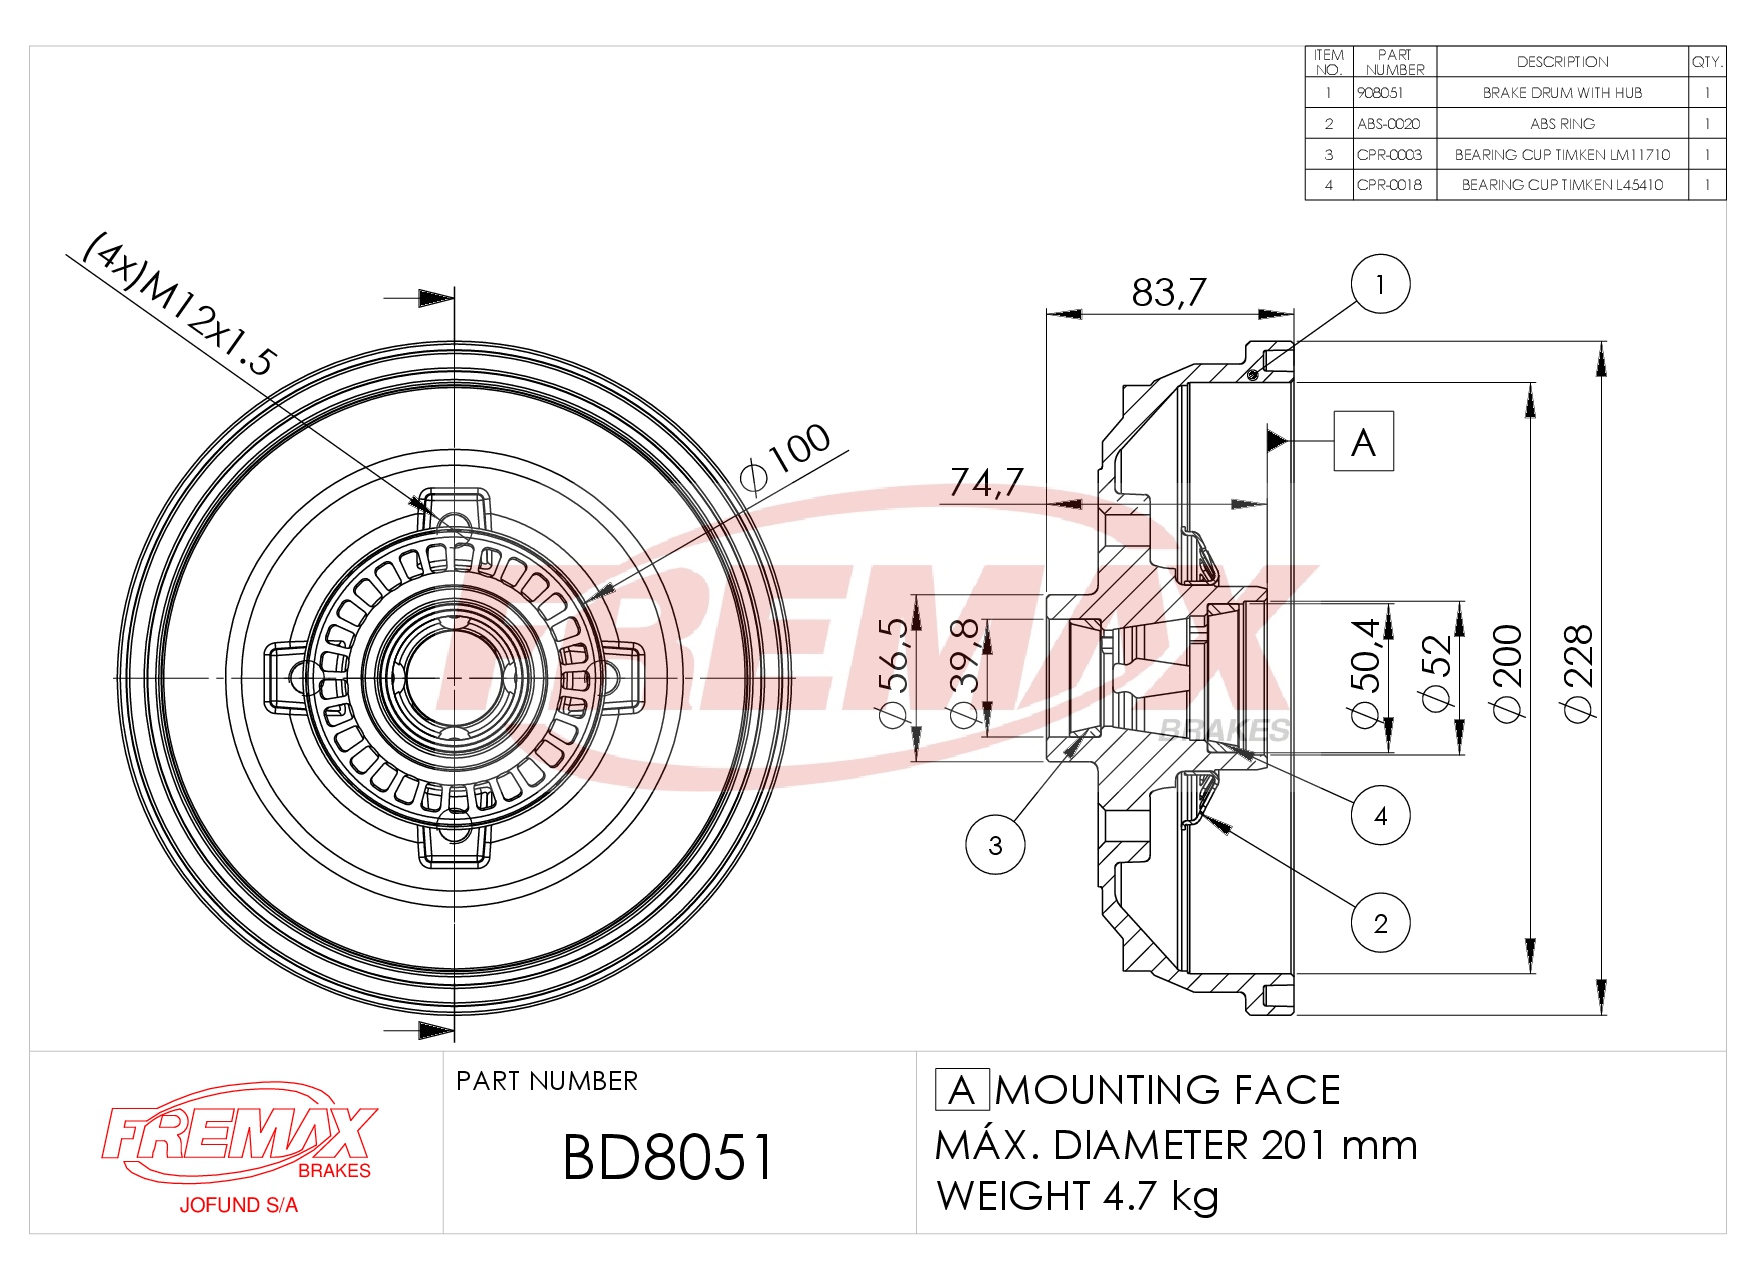 Imagen de BD-8051  B.DRUM HC  - COMPONENTS ABS RING (1),BEARING CUP  (2) für Opel Corsa B Abs 93-